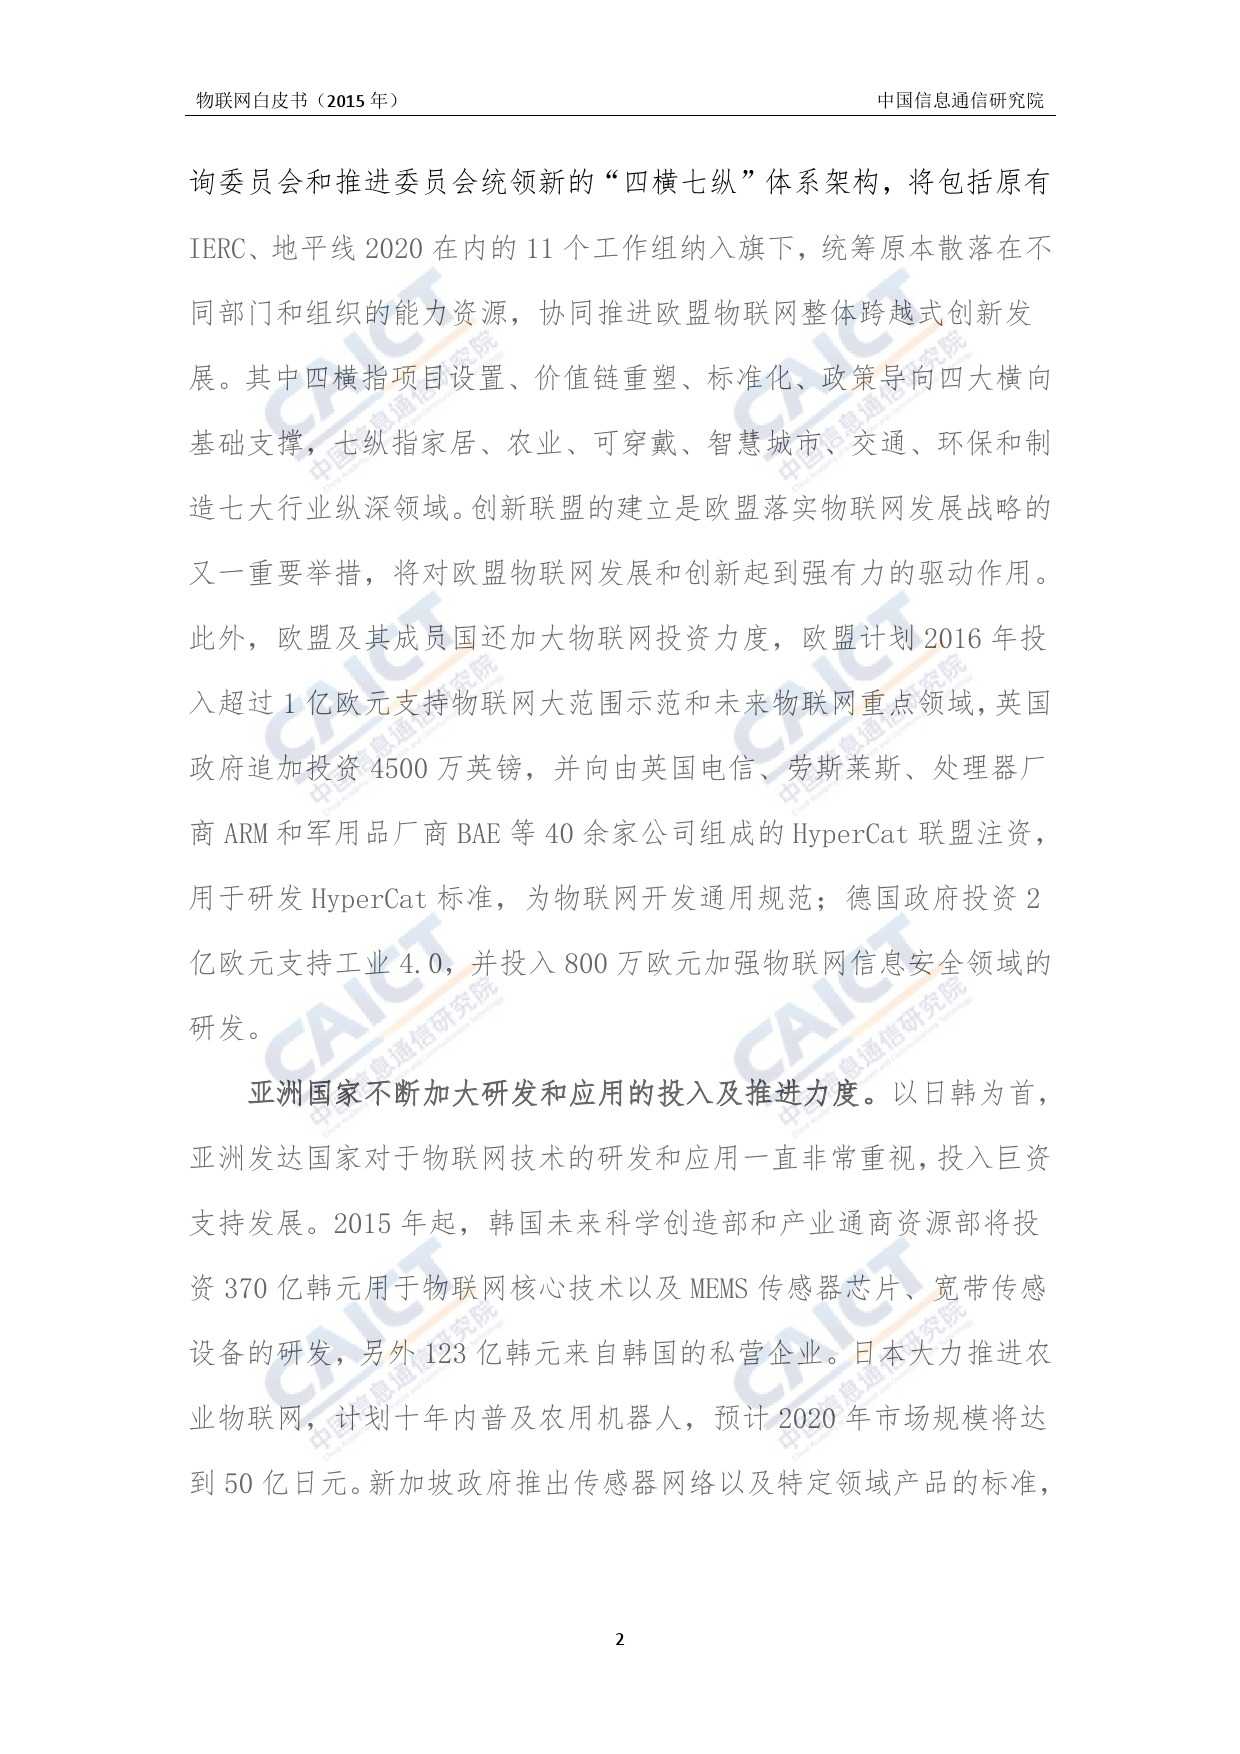 中国信息通信研究院：2015年物联网白皮书_000006